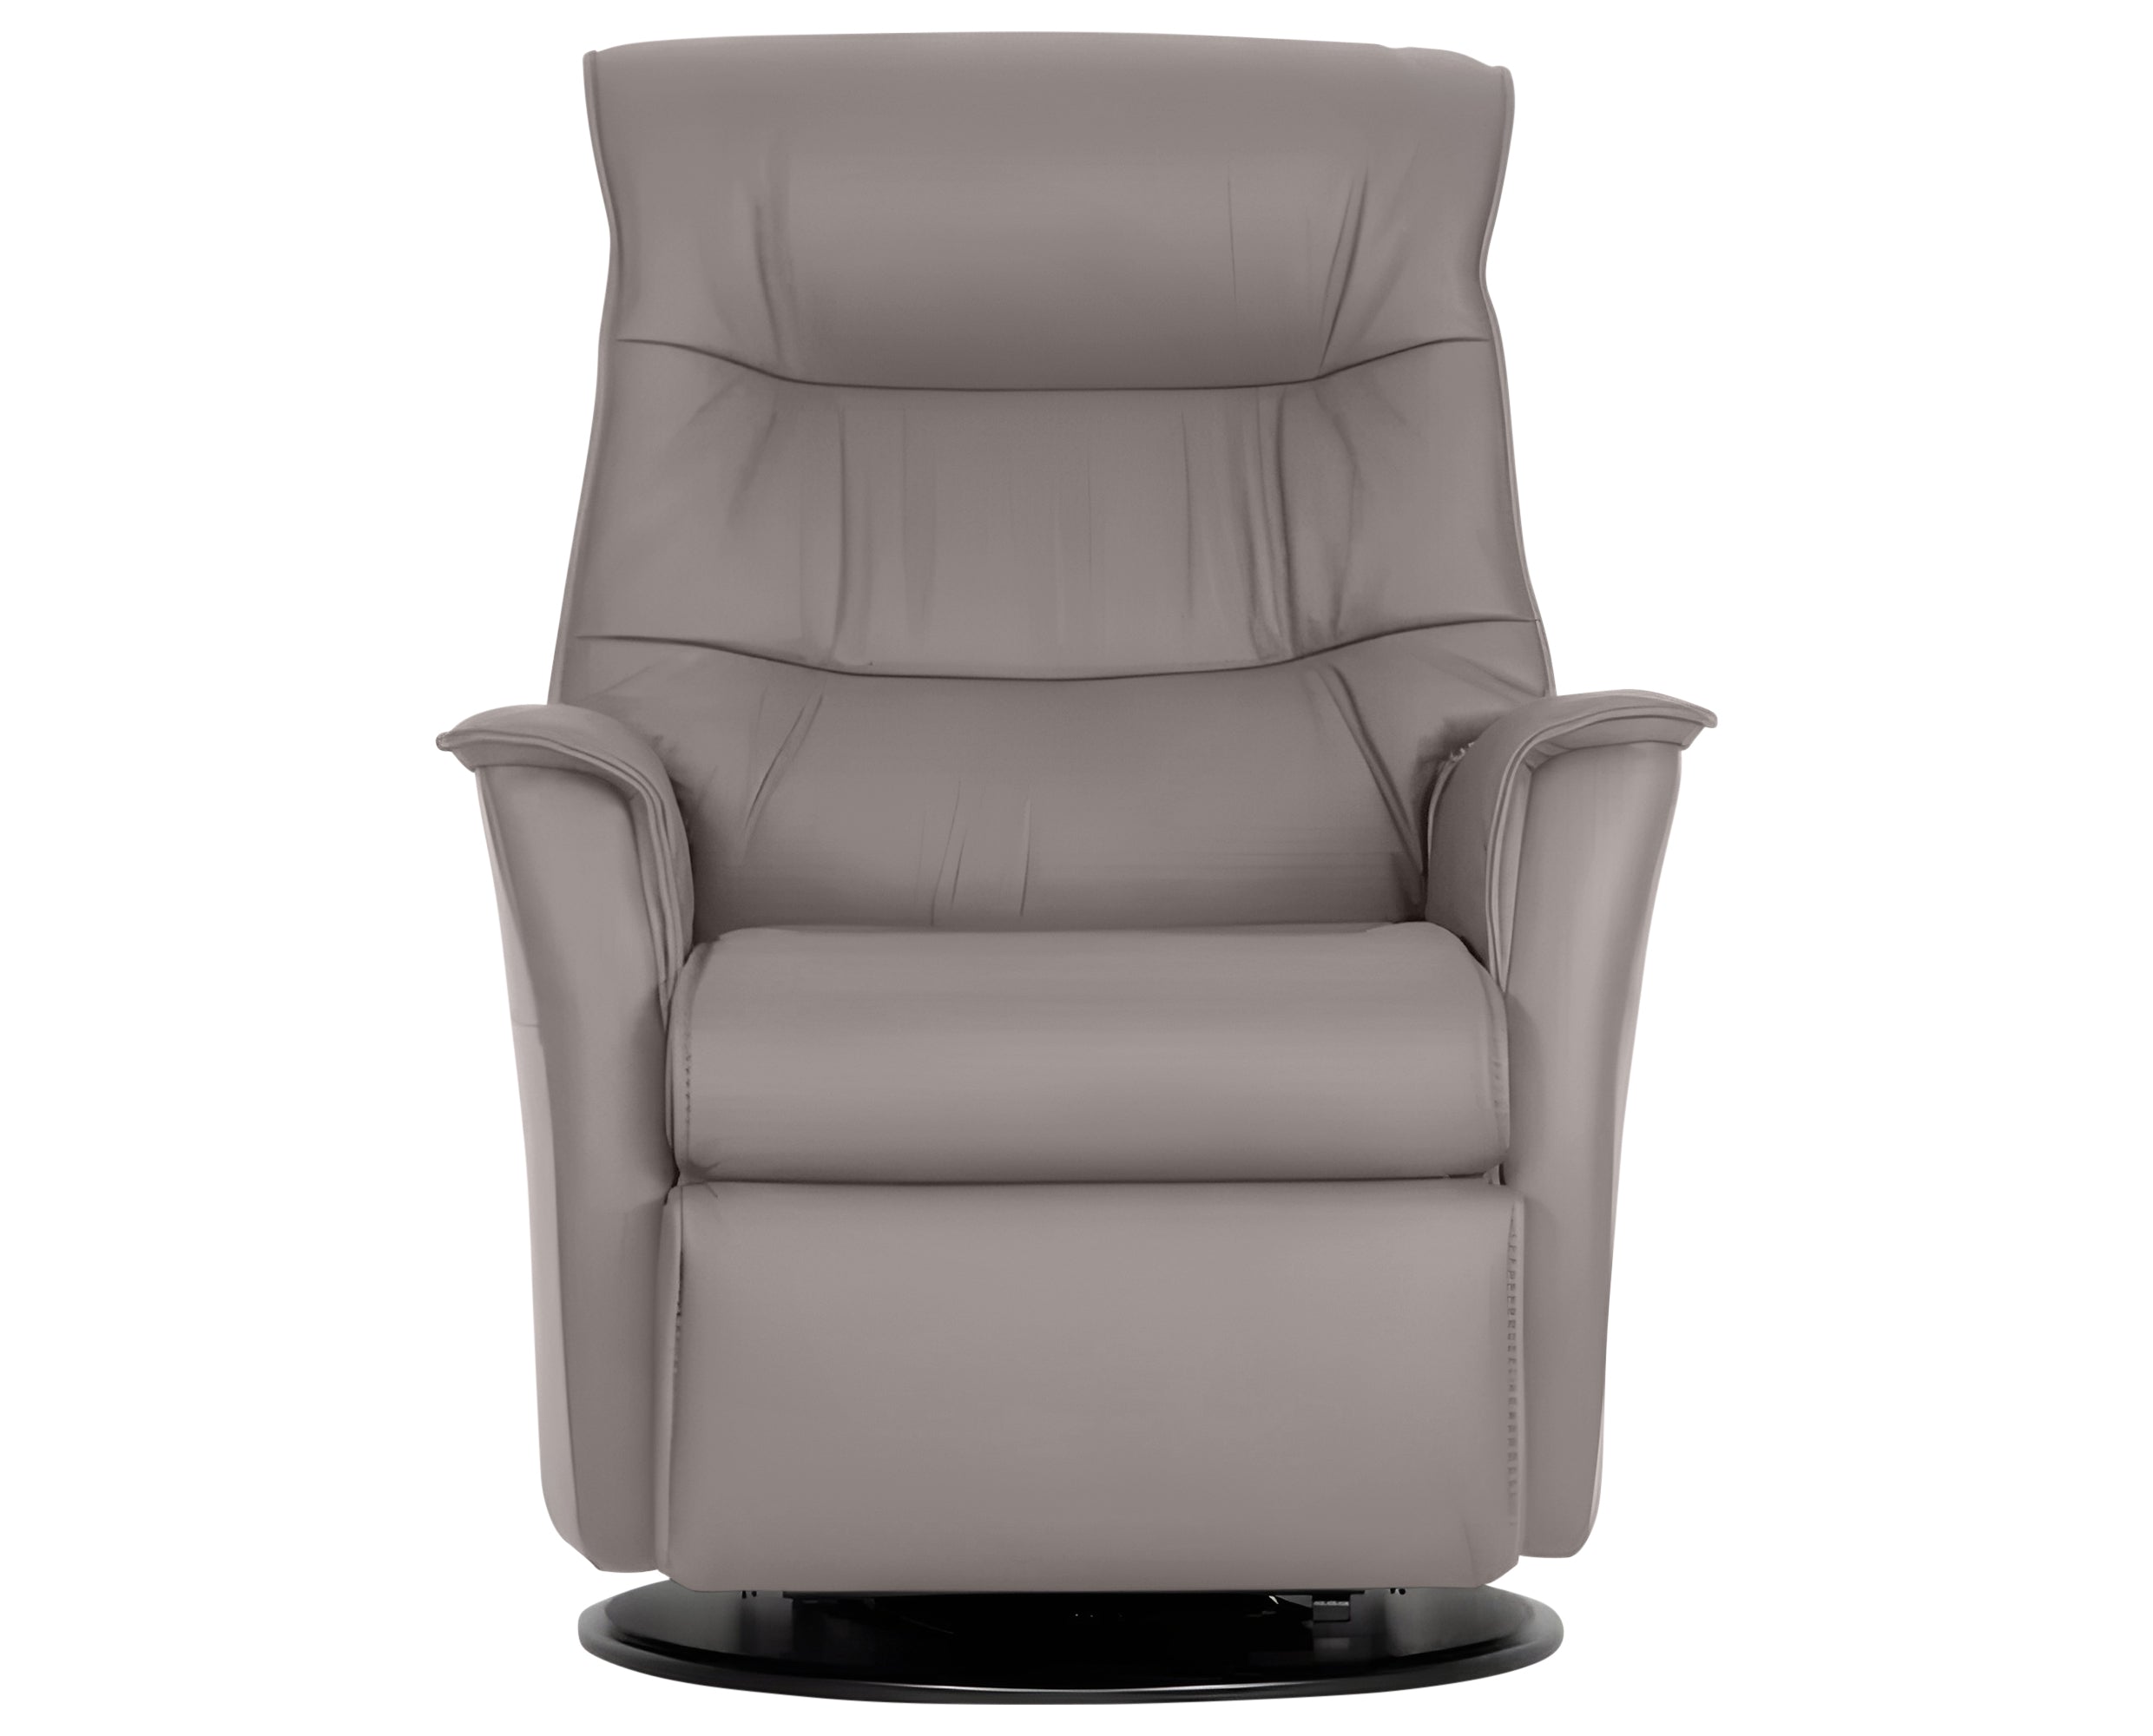 Trend Leather Cinder | Norwegian Comfort Paramount Recliner | Valley Ridge Furniture